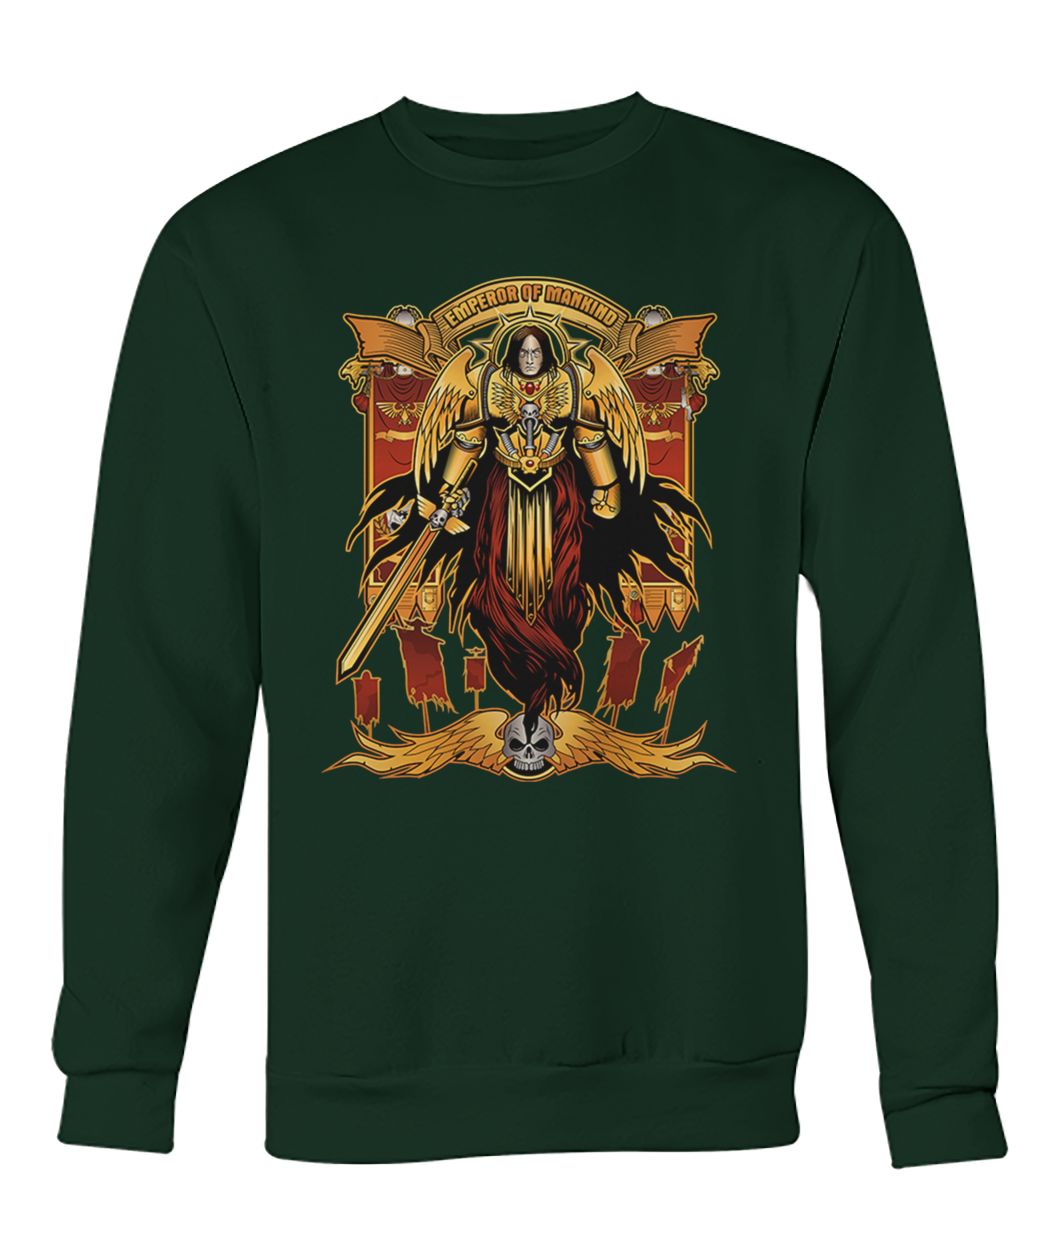 The god emperor of mankind crew neck sweatshirt